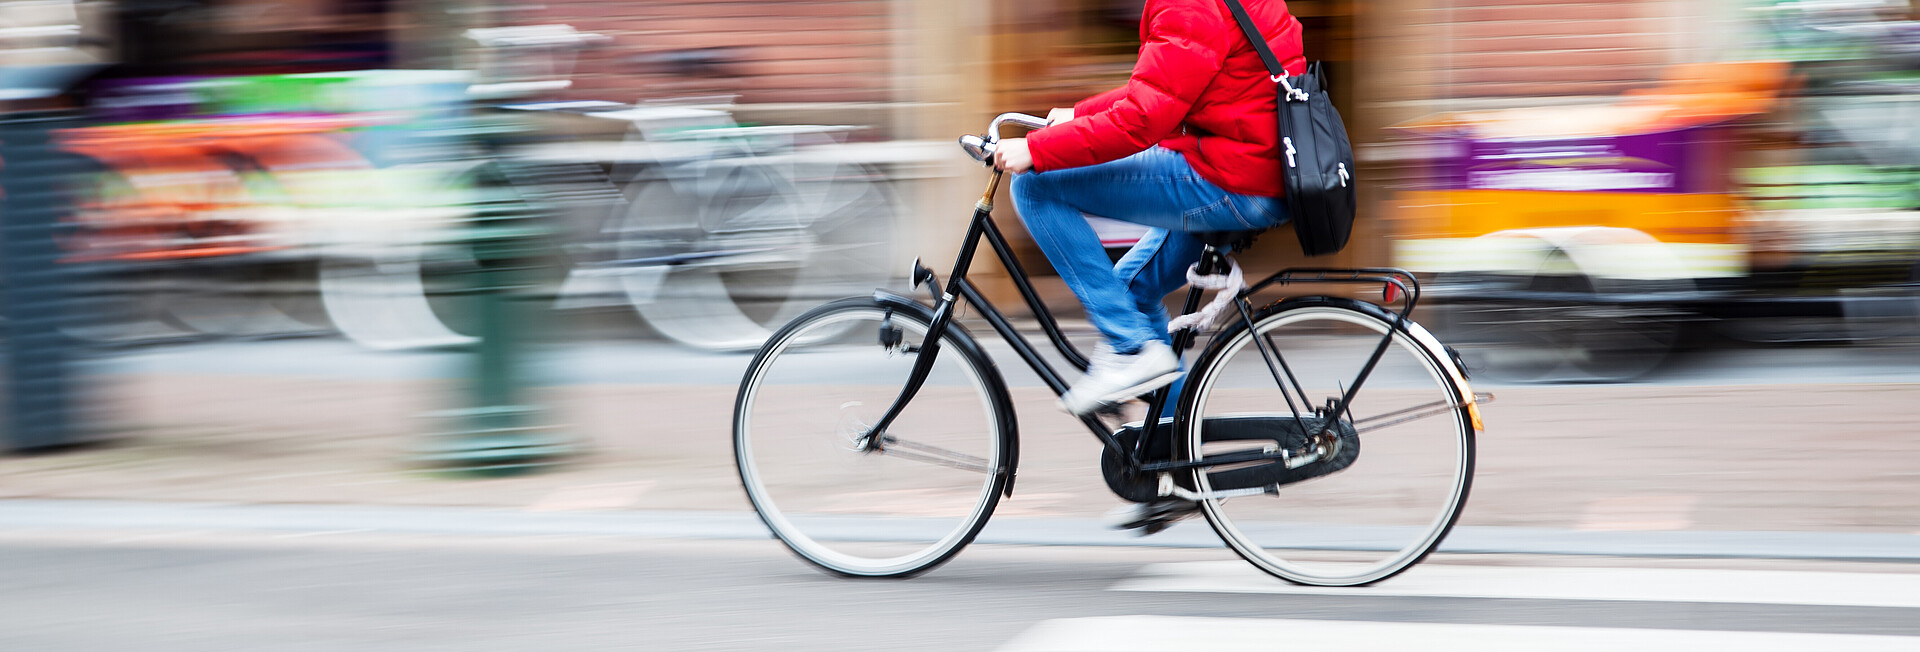 Bild zeigt einen Fahrradfahrer auf der Straße